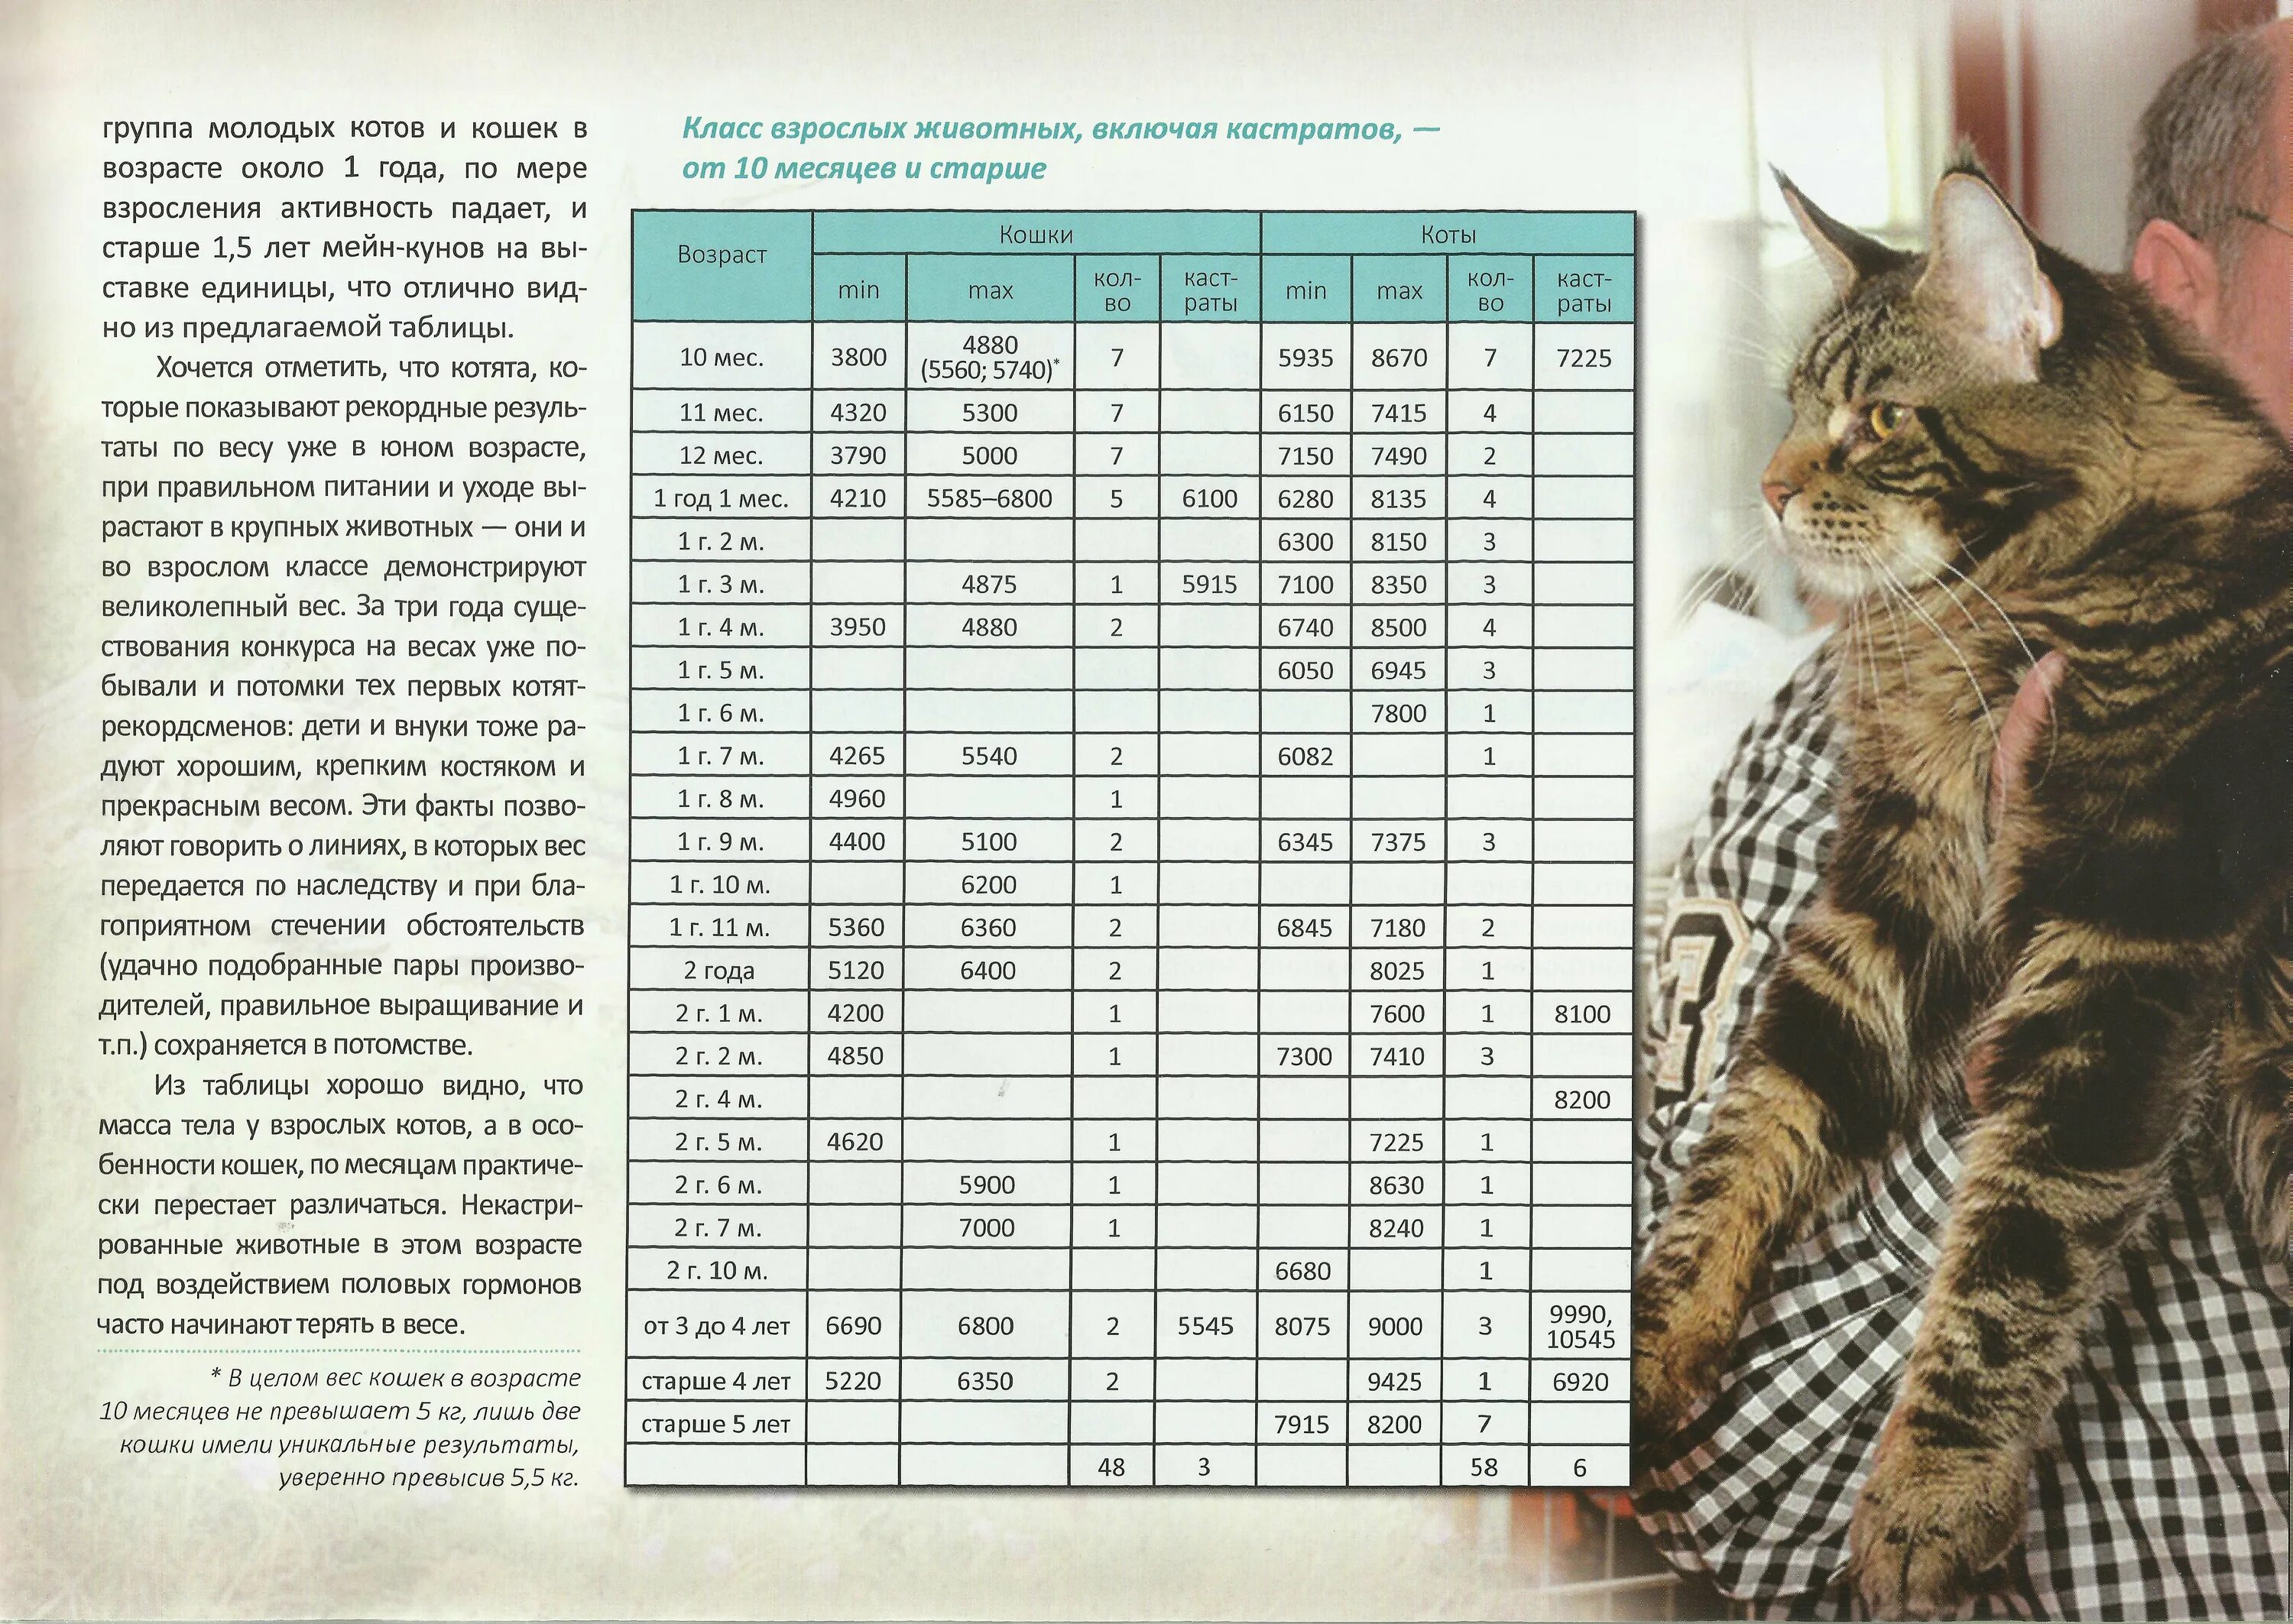 Сколько обычно котят у кошки. Мейн кун 4 месяца вес таблица. Таблица веса Мейн куна по месяцам нормы. Котёнок Мейн кун 2 месяца вес и рост. Вес Мейн куна в 2 месяца таблица.